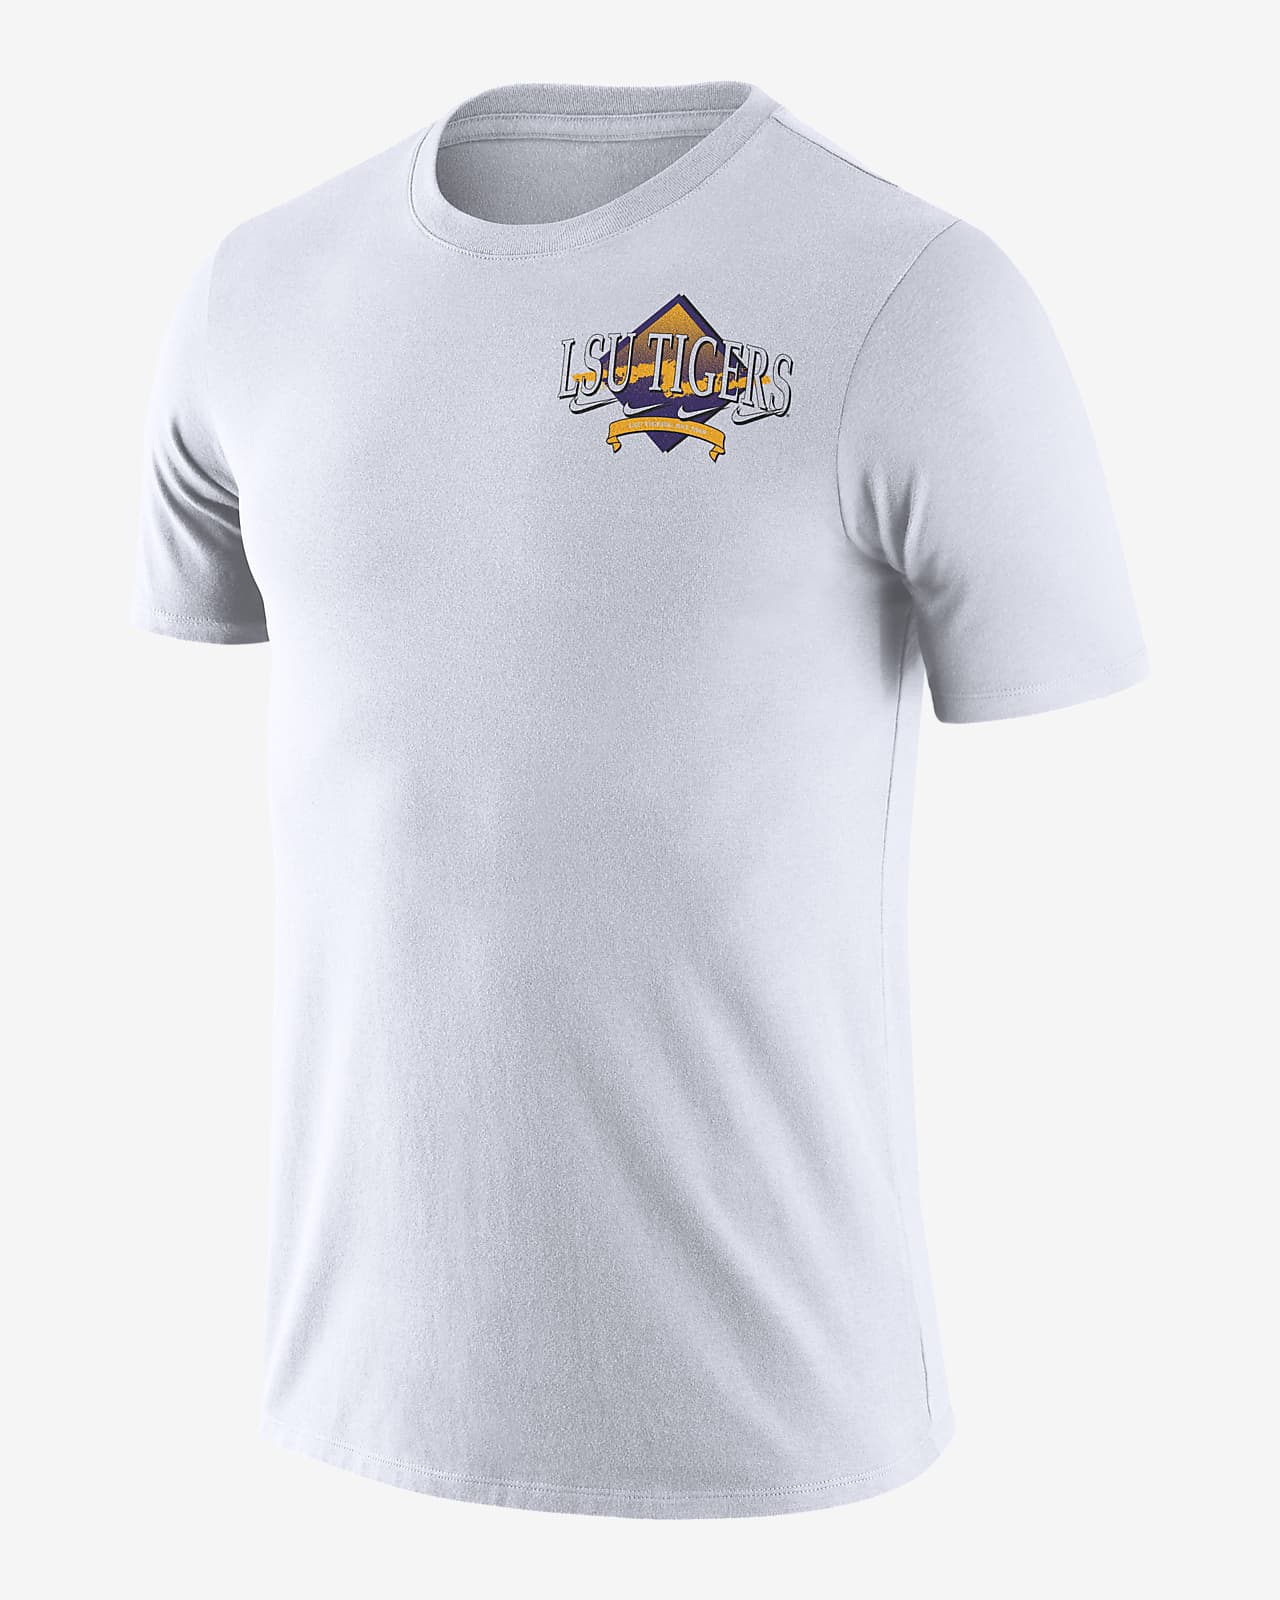 Nike College (LSU) Men's T-Shirt